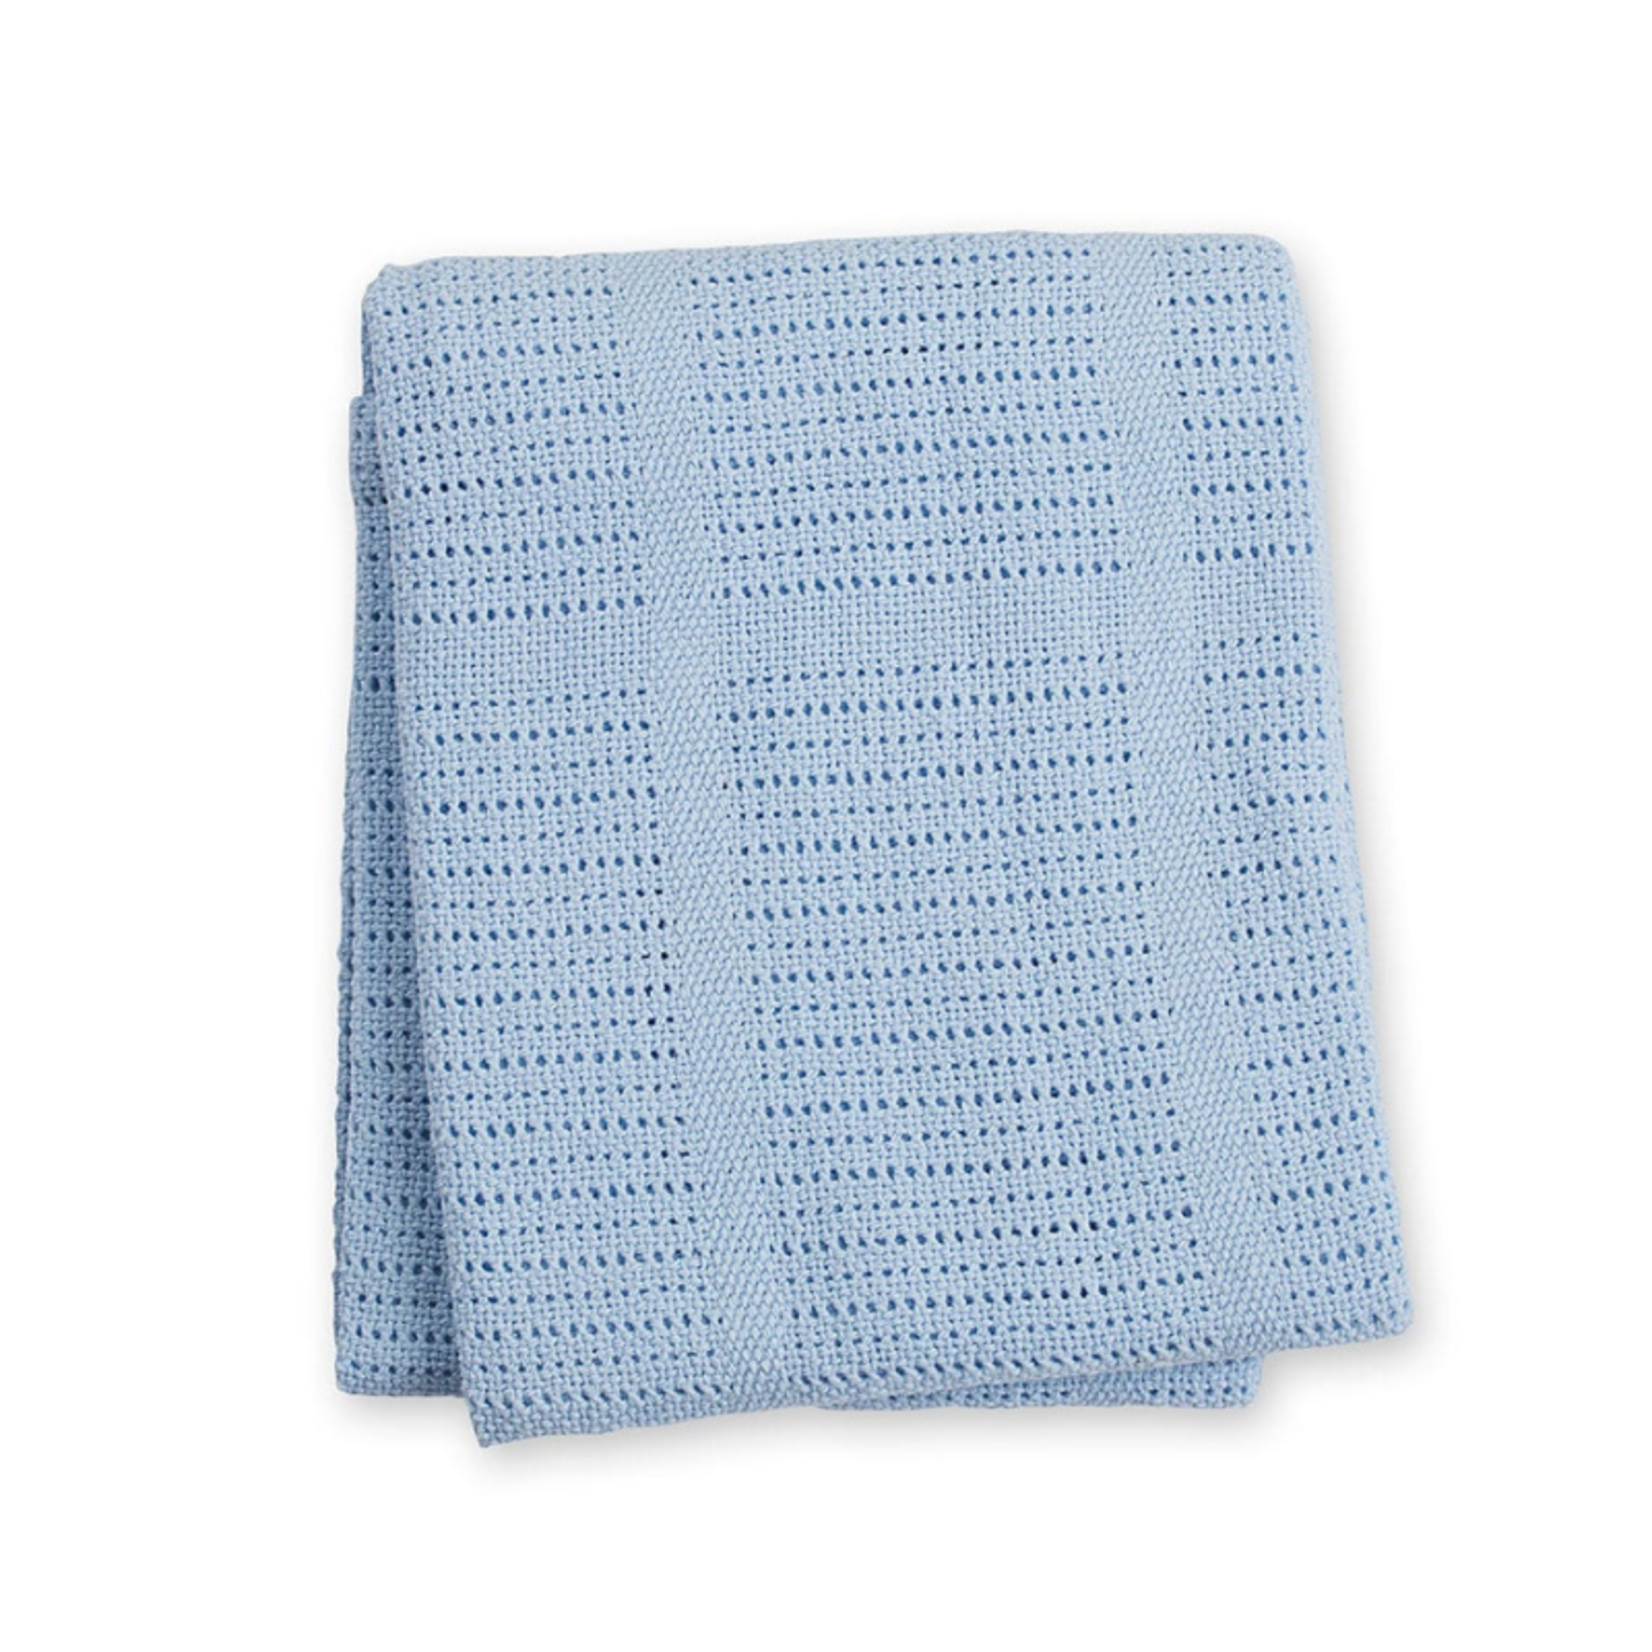 Lulujo Lulujo Cellular Blanket Blue 40"x 30"